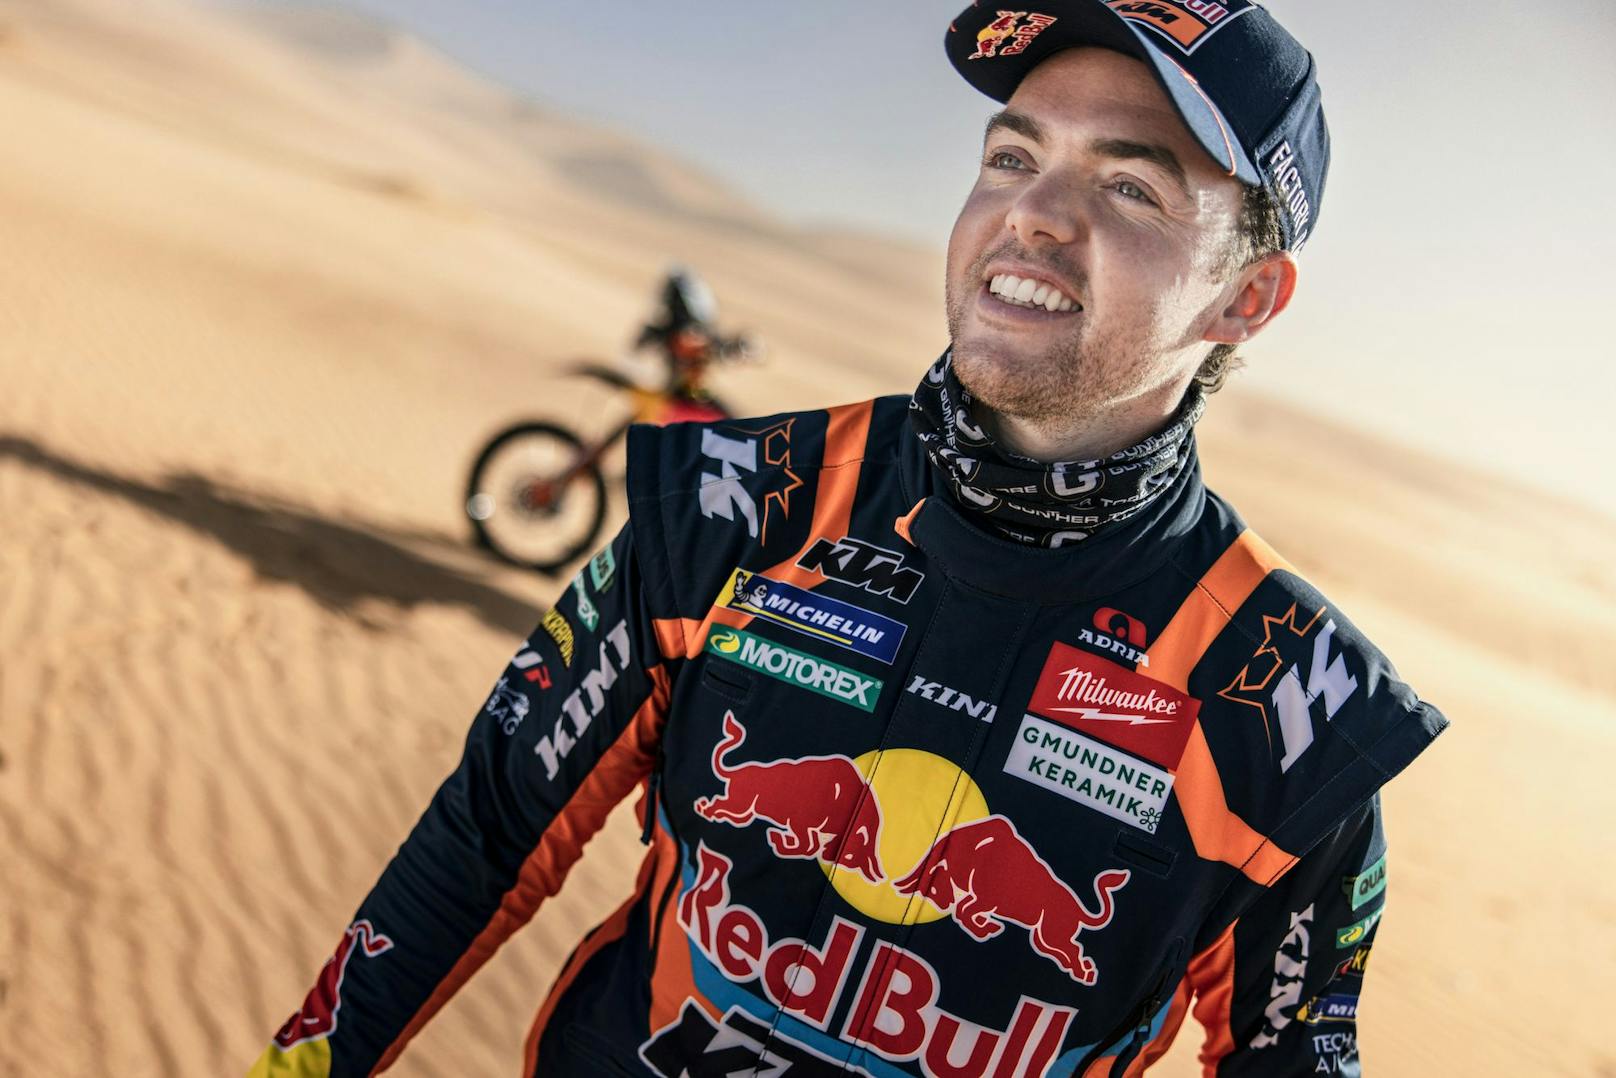 Aufbruch in die Wüsten-Rallye! KTM-Ass Matthias Walkner startet zum neunten Mal bei der Dakar – mit einem besonderen Helm.